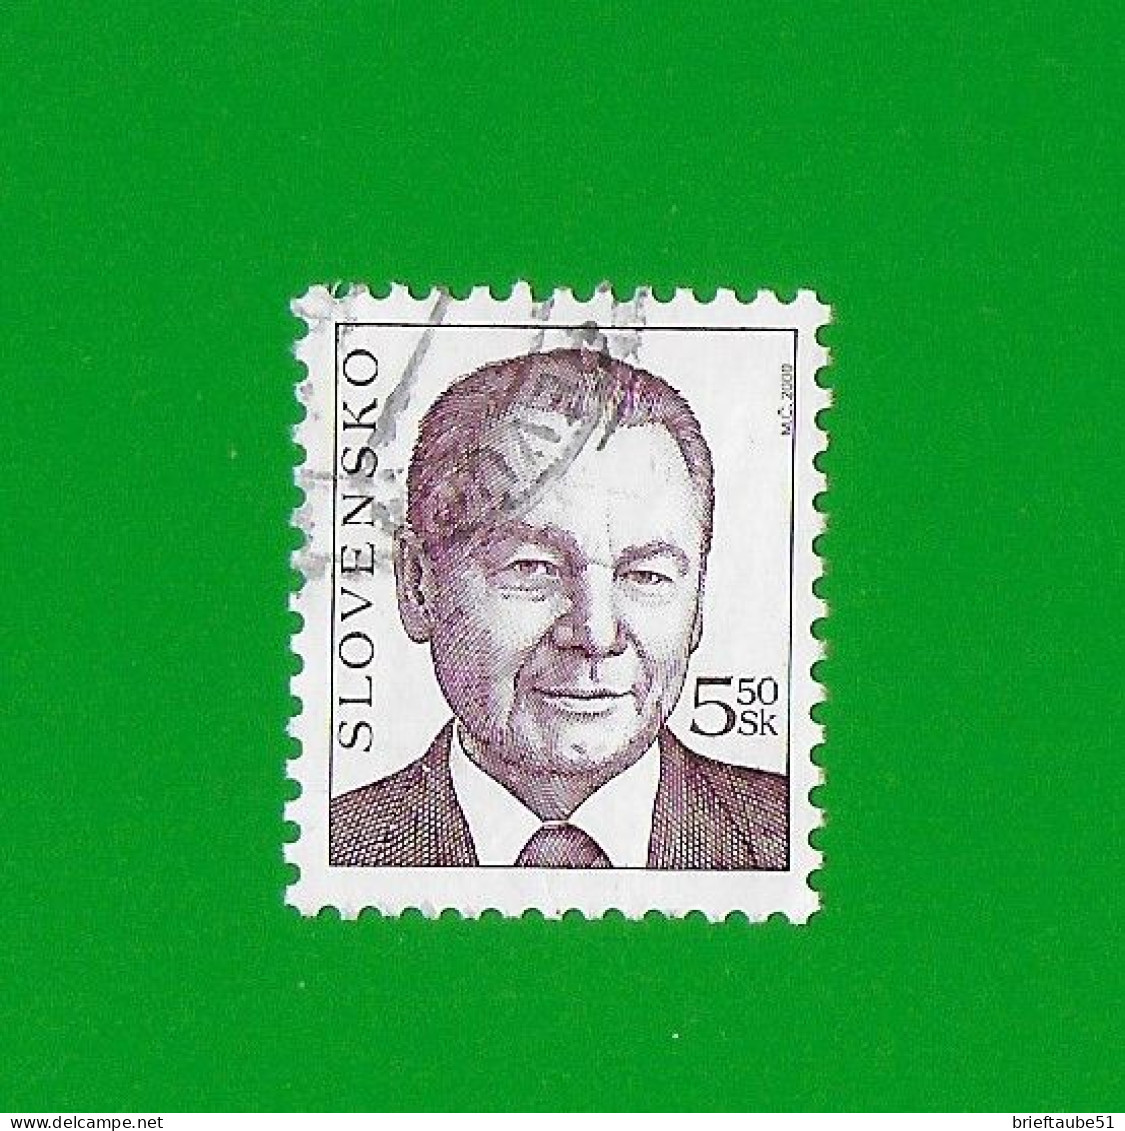 SLOVAKIA REPUBLIC 2000 Gestempelt°Used/Bedarf  MiNr. 371 #  "FREIMARKE # Präsident" - Used Stamps